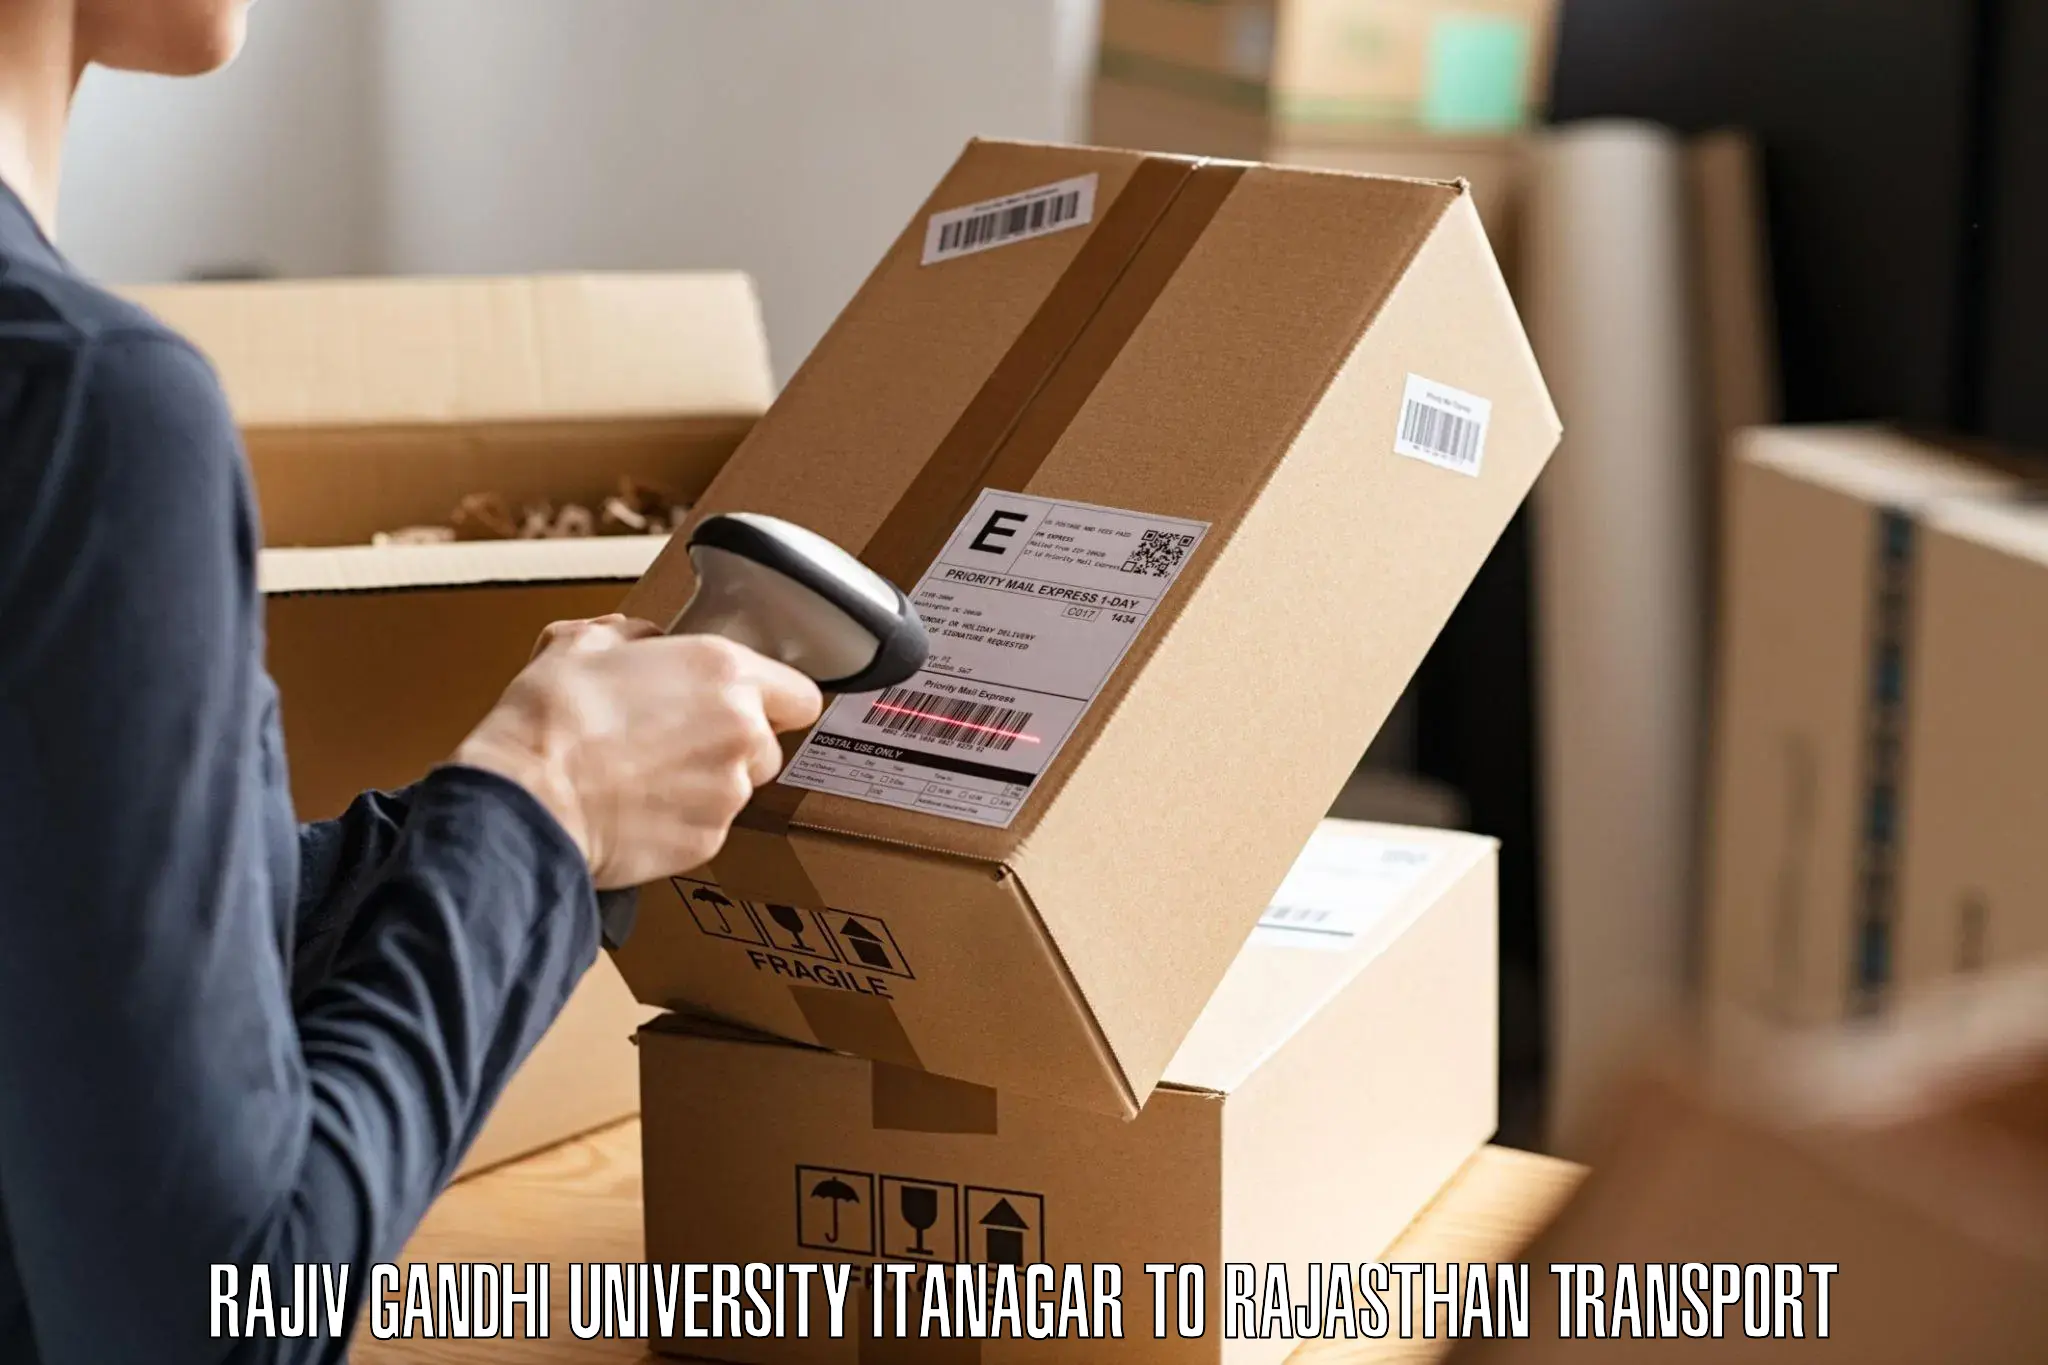 Furniture transport service Rajiv Gandhi University Itanagar to Mahwa